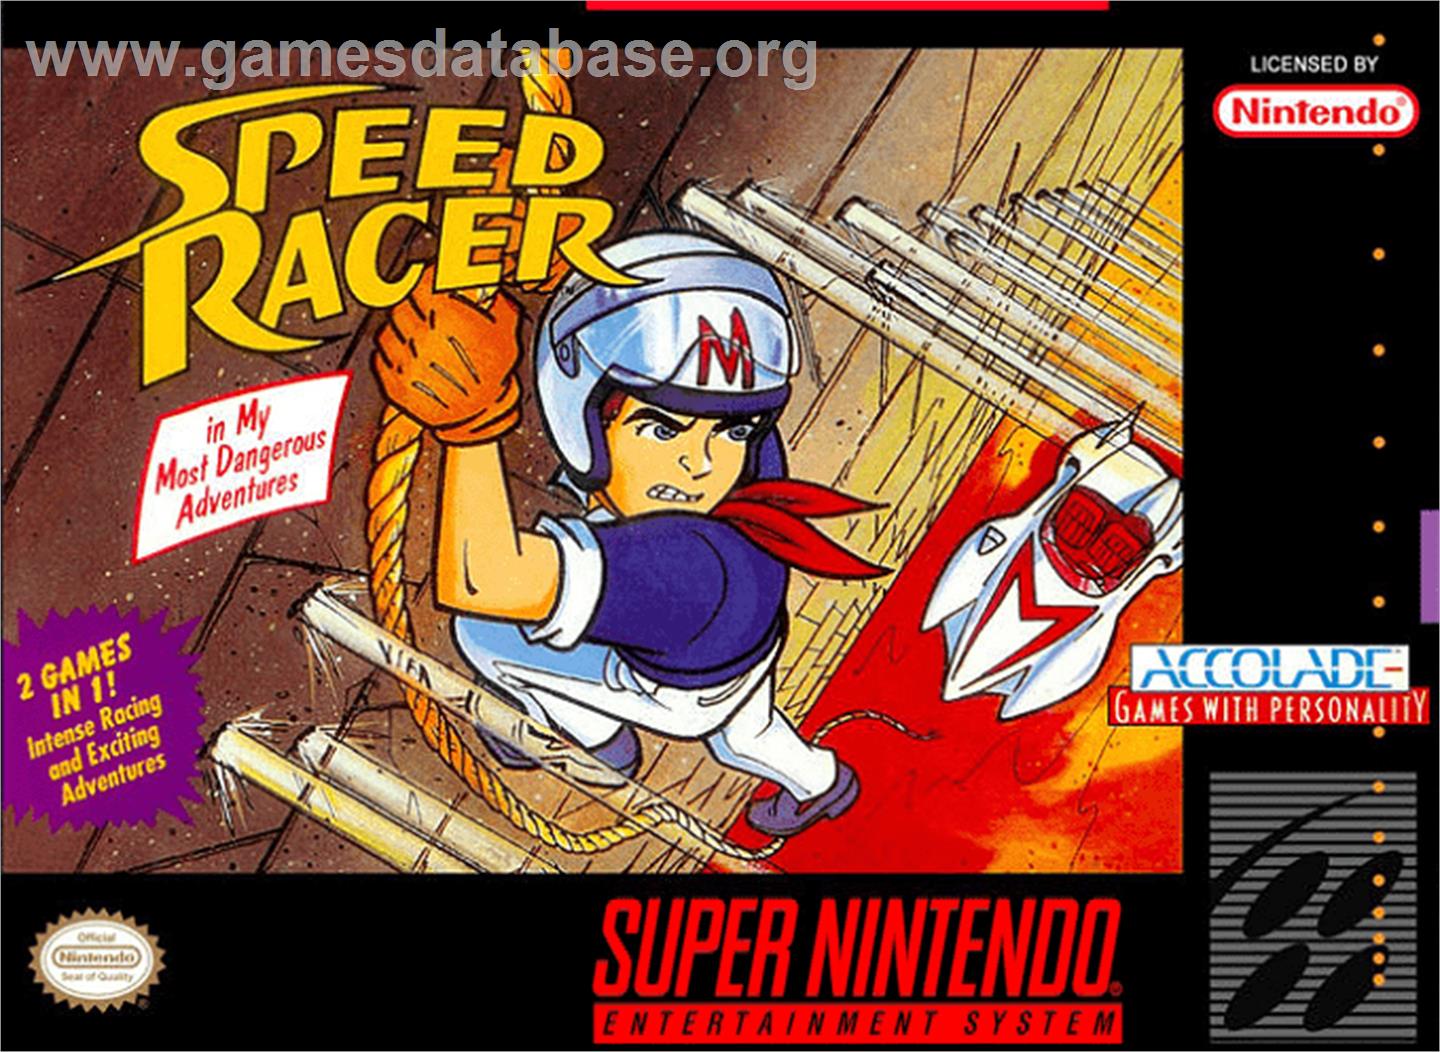 Speed Racer in My Most Dangerous Adventures - Nintendo SNES - Artwork - Box